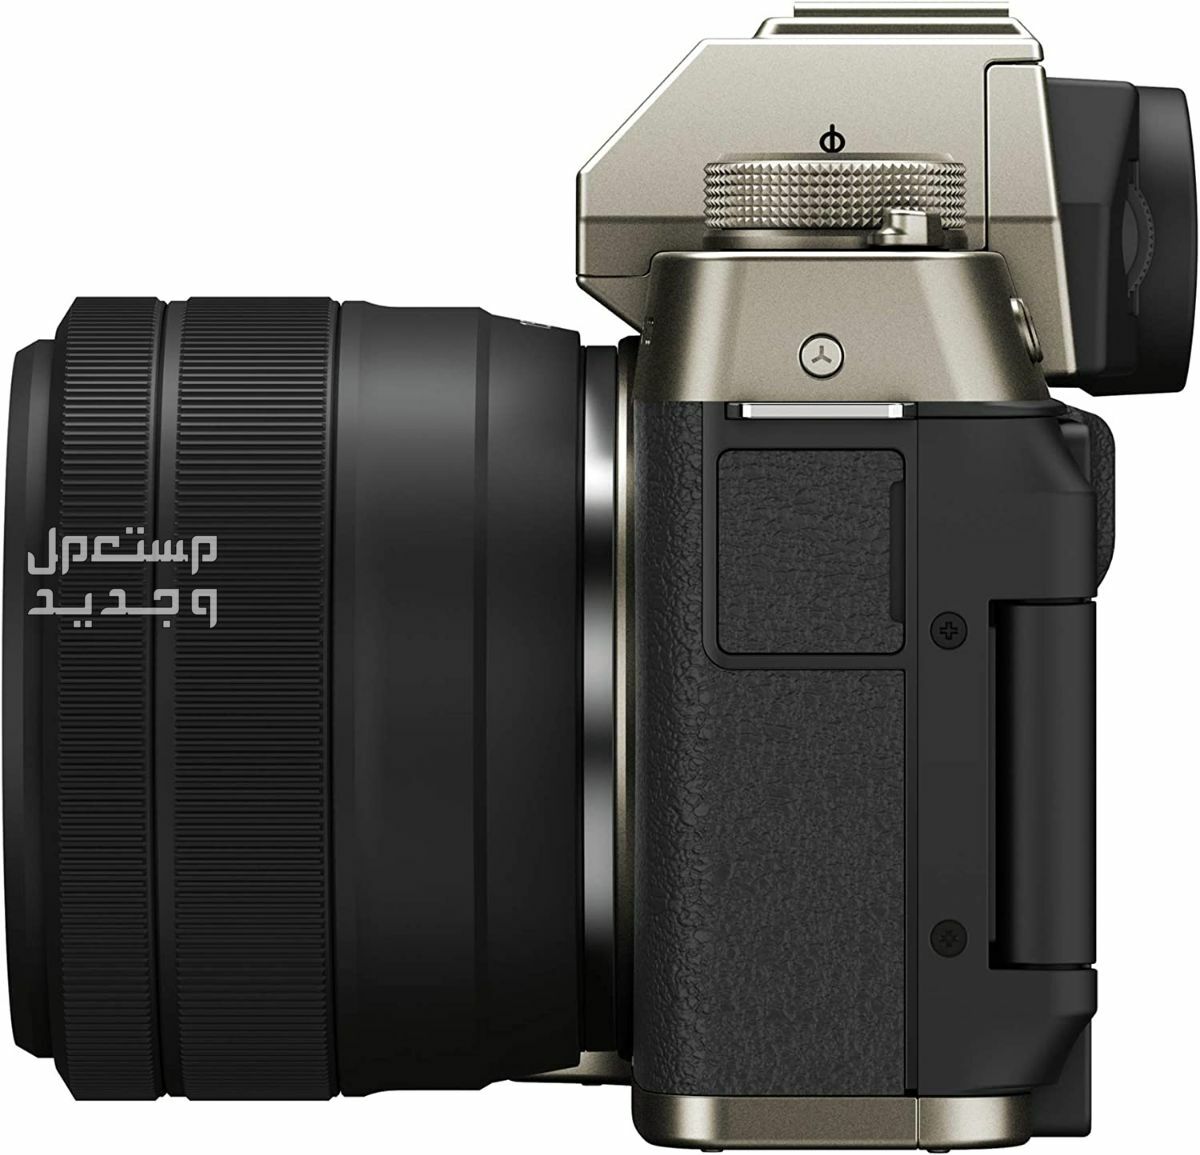 10 كاميرات تصوير ماركات عالمية بأسعار رخيصة في المغرب سعر كاميرا Fujifilm X-T200